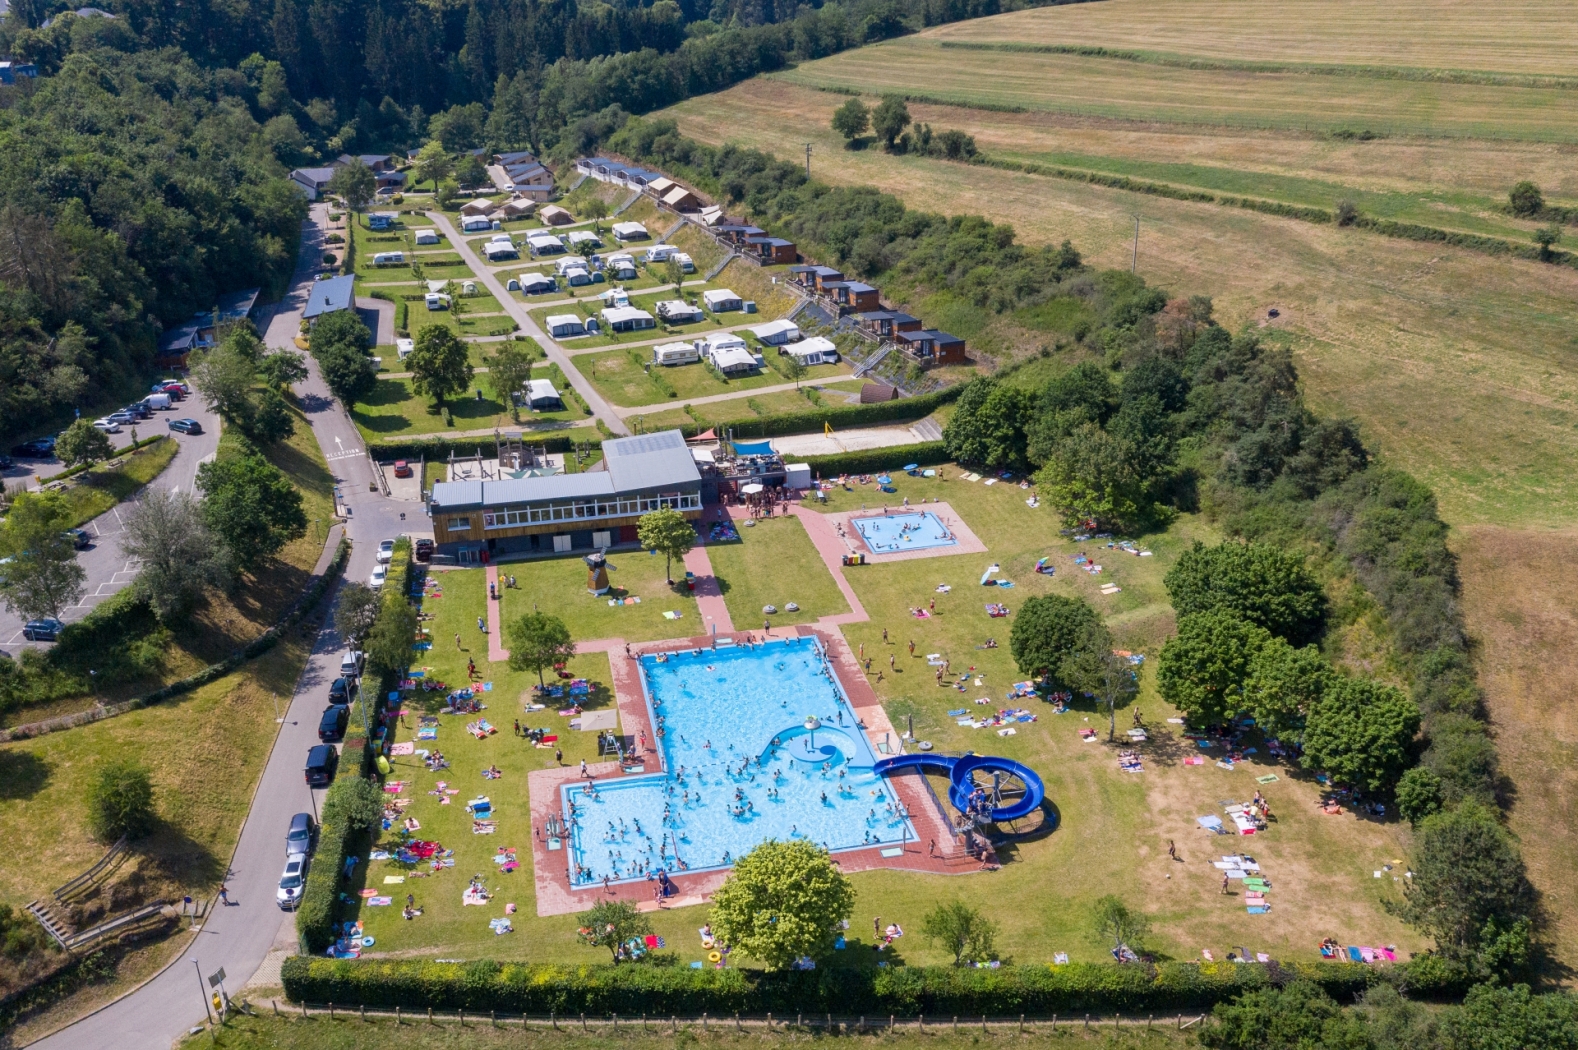 Campings en vakantieparken Luxemburg - Reisliefde